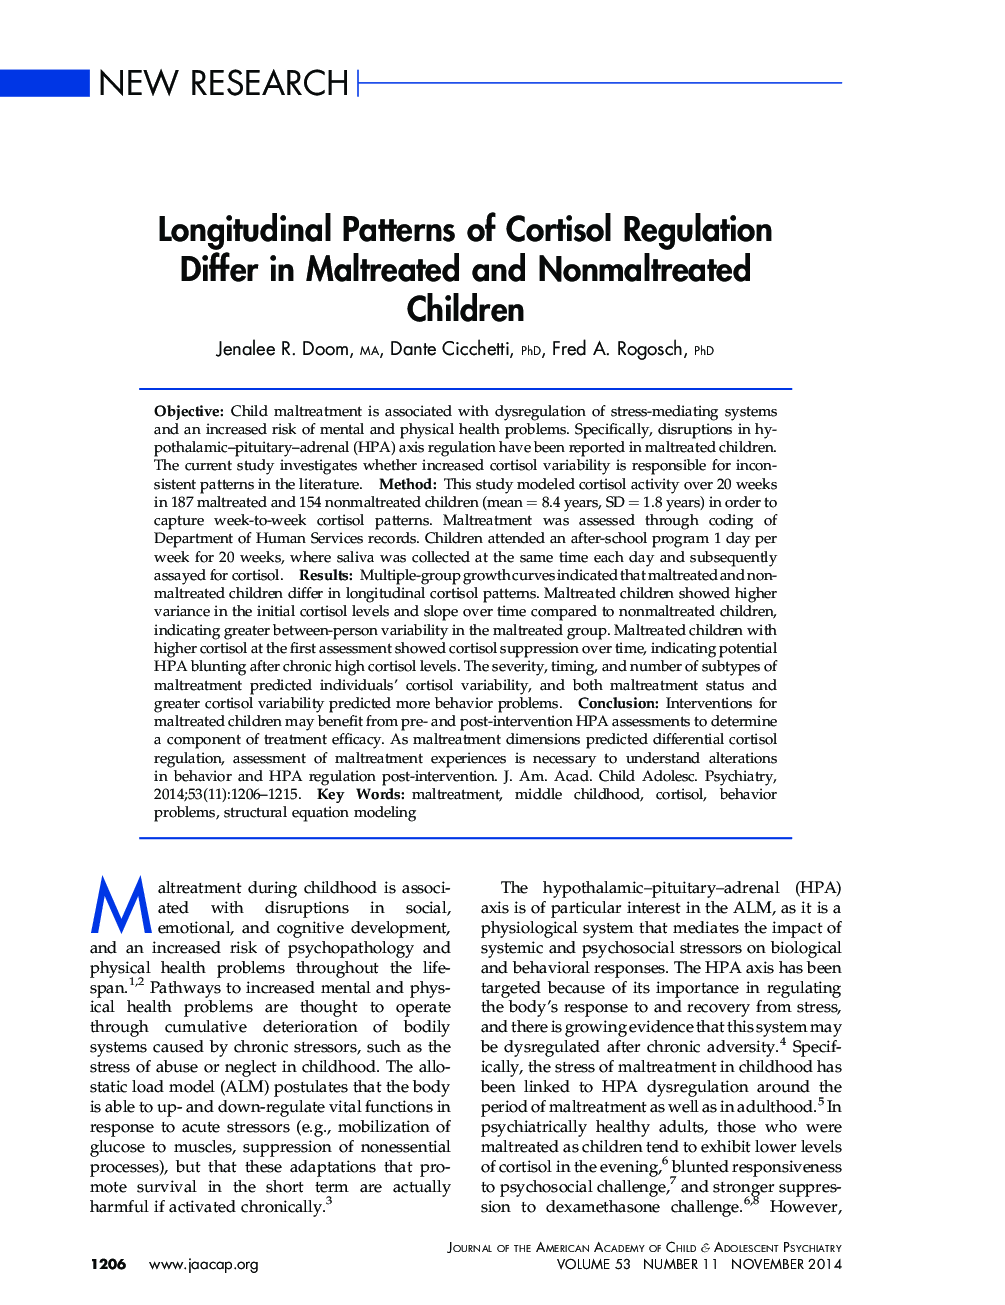 الگوهای طولی مقررات کورتیزول در کودکان متخلف و غیرمعمول اختلاف نظر دارند 